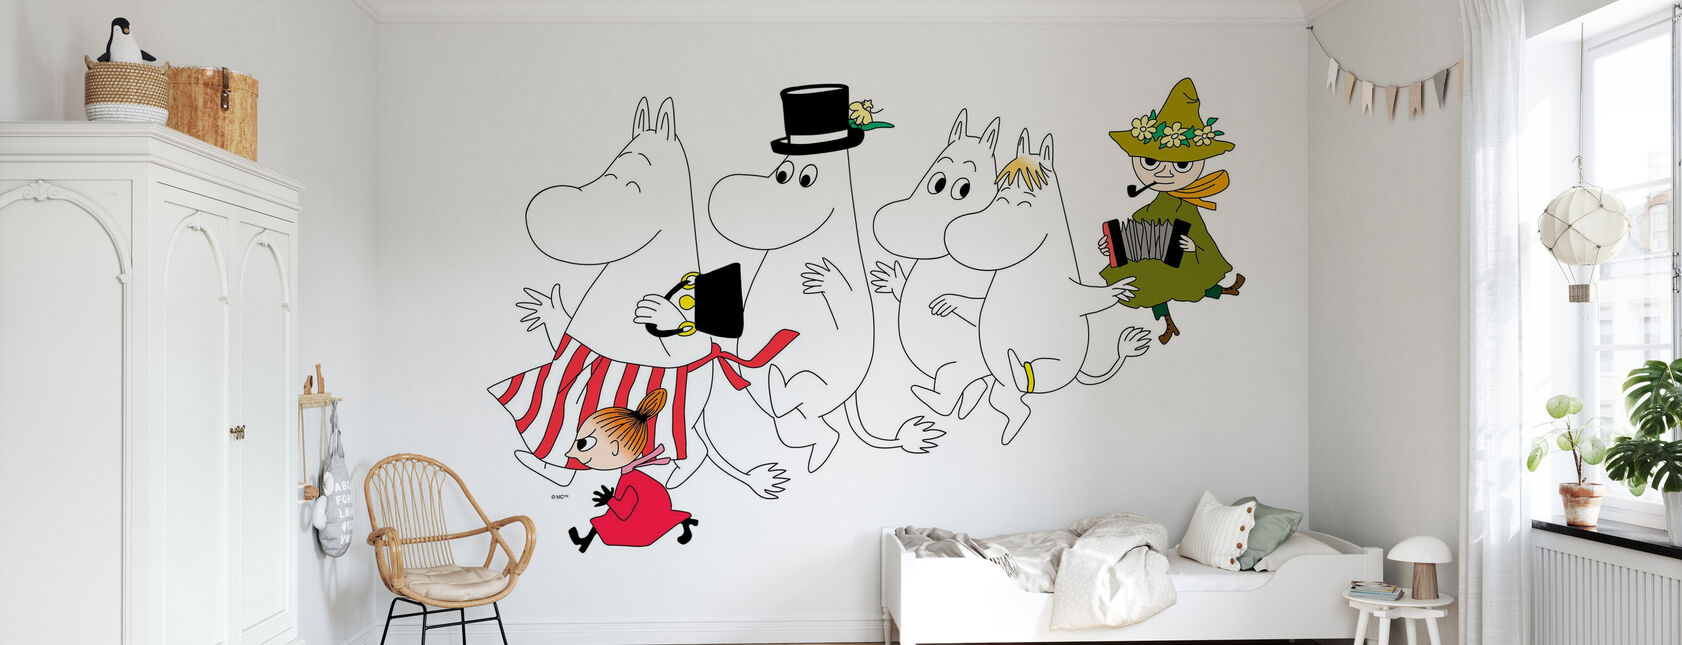 Moomin - The Moomins - Wallpaper - Kids Room